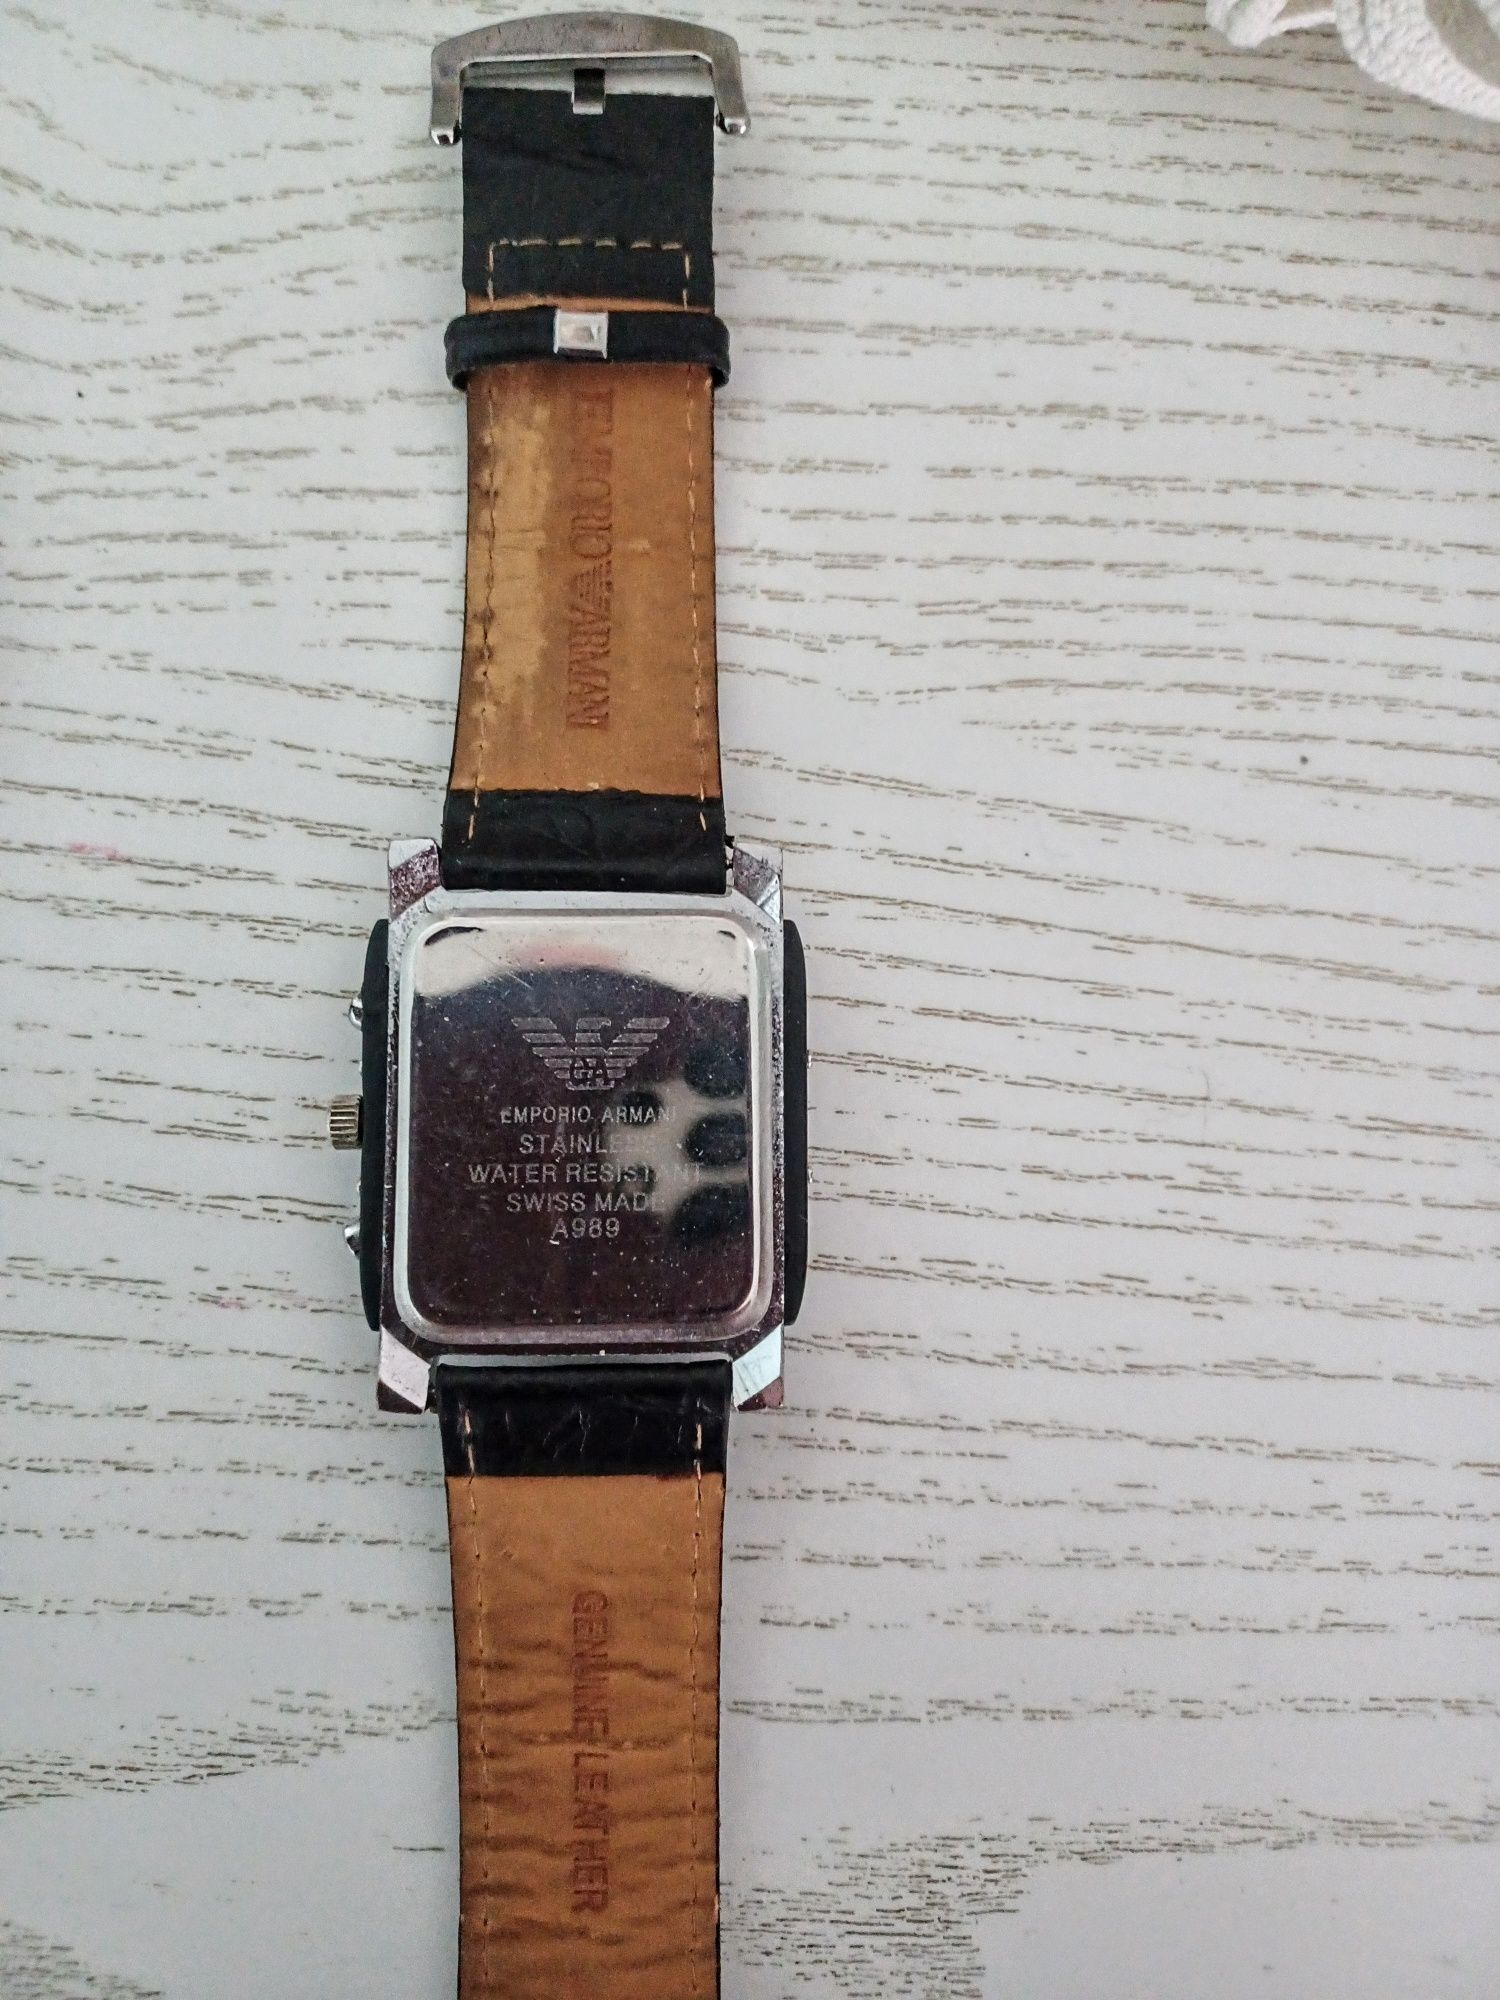 De vânzare ceas retro marca Emporio Armani